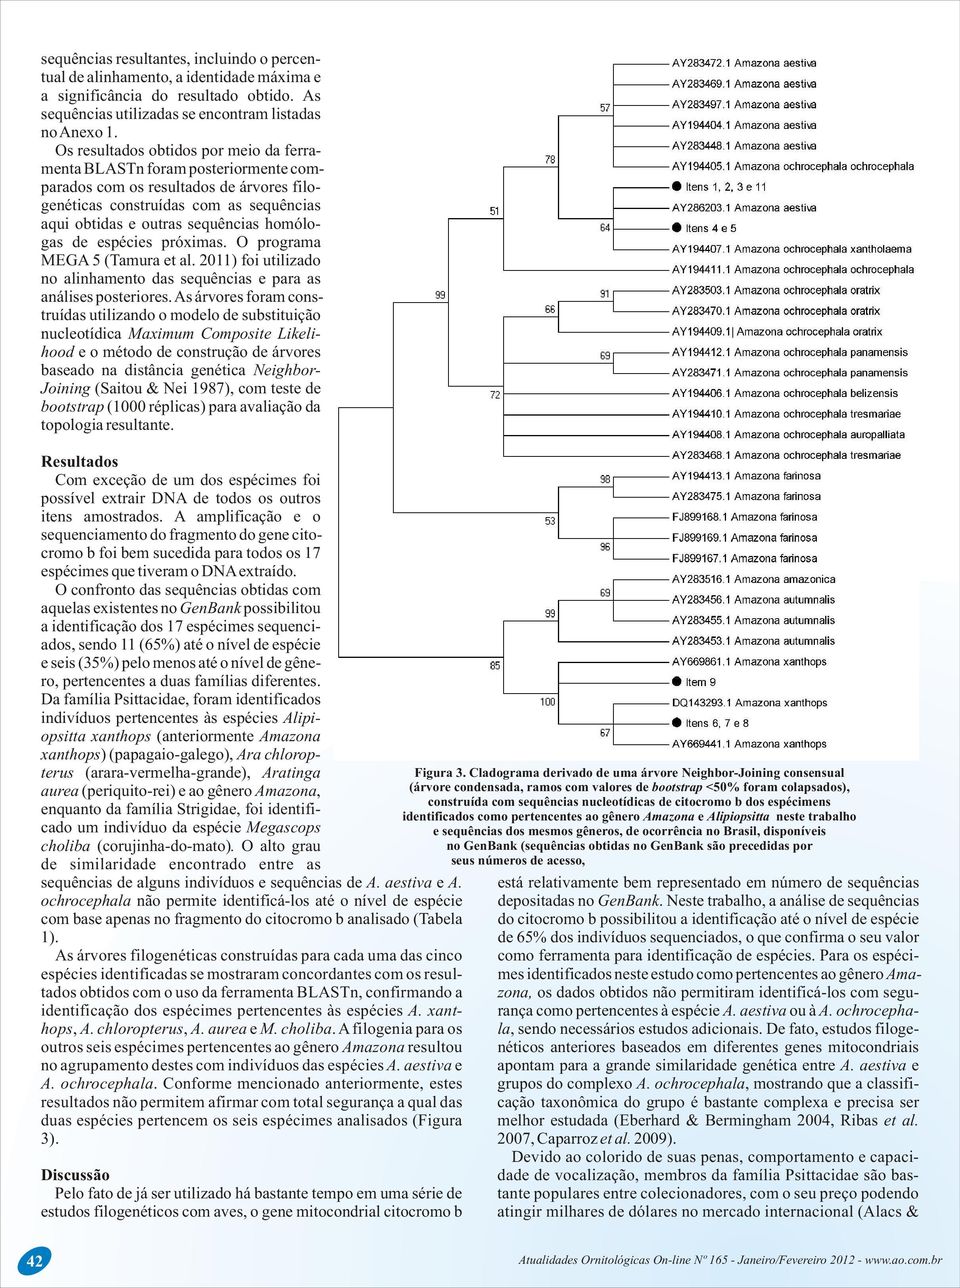 de espécies próximas. O programa MEGA 5 (Tamura et al. 2011) foi utilizado no alinhamento das sequências e para as análises posteriores.